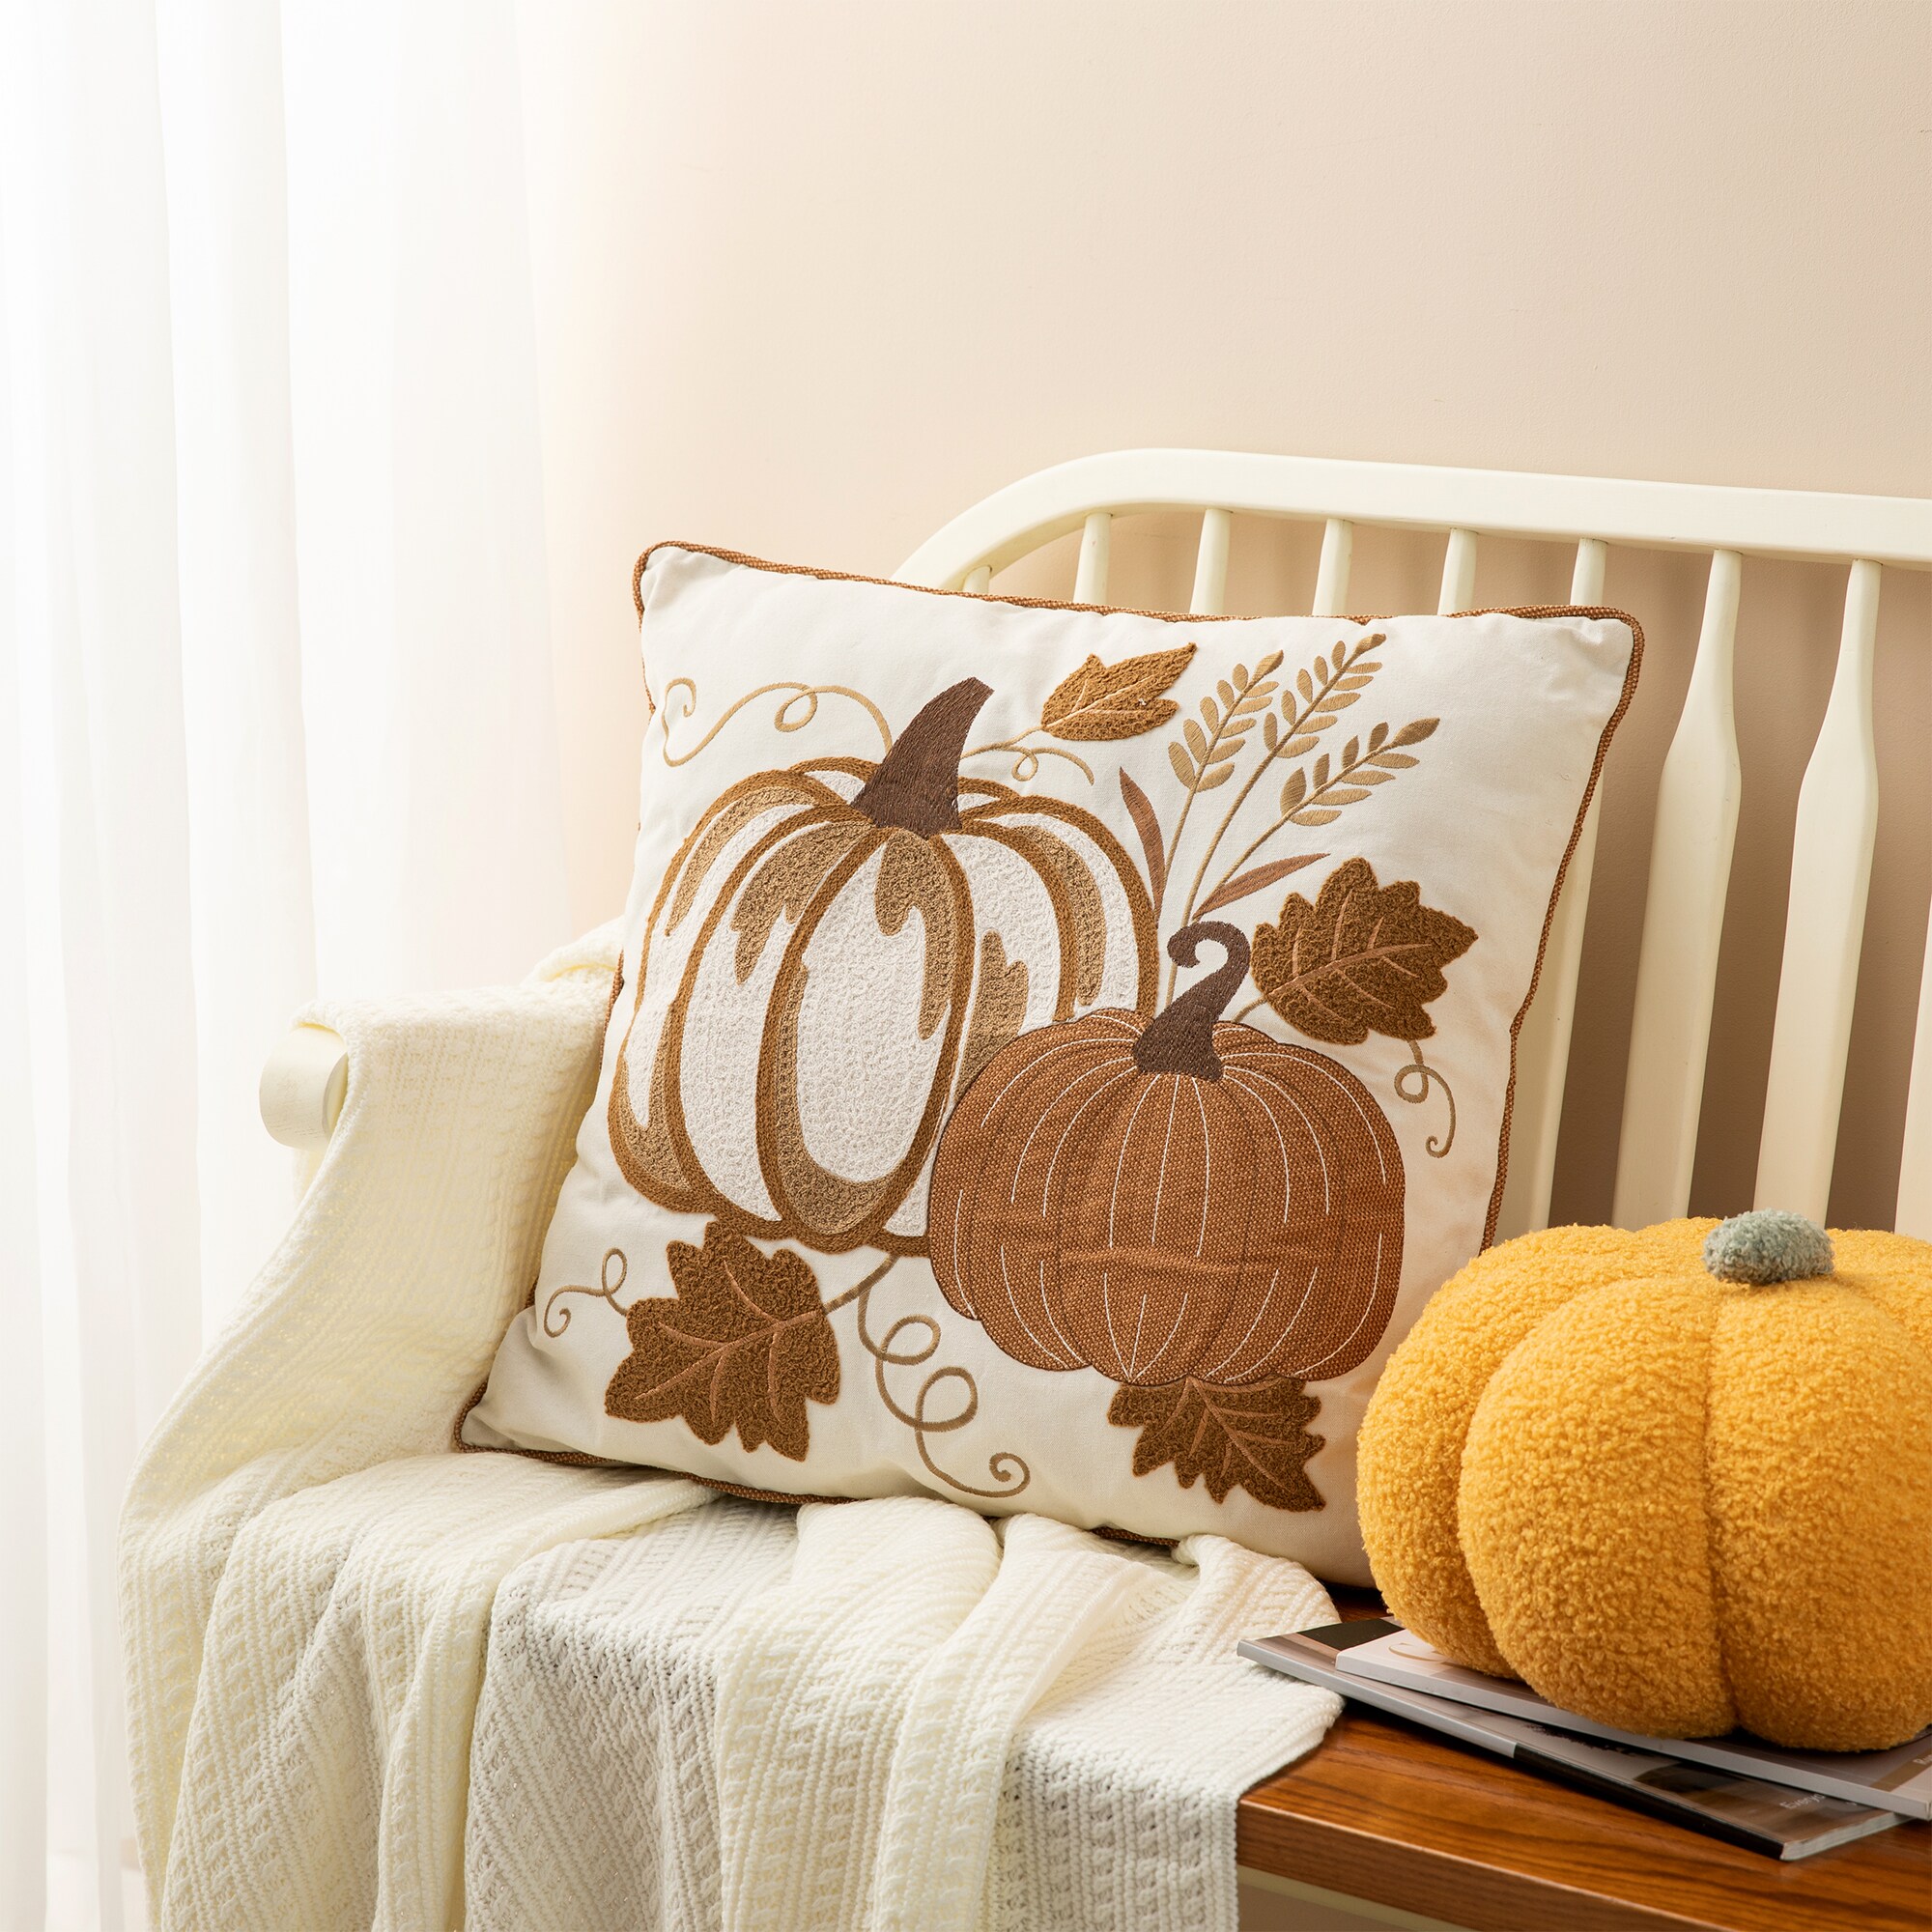 Pumpkin Trio - Decorative Pillow Cover - 18x18 inches